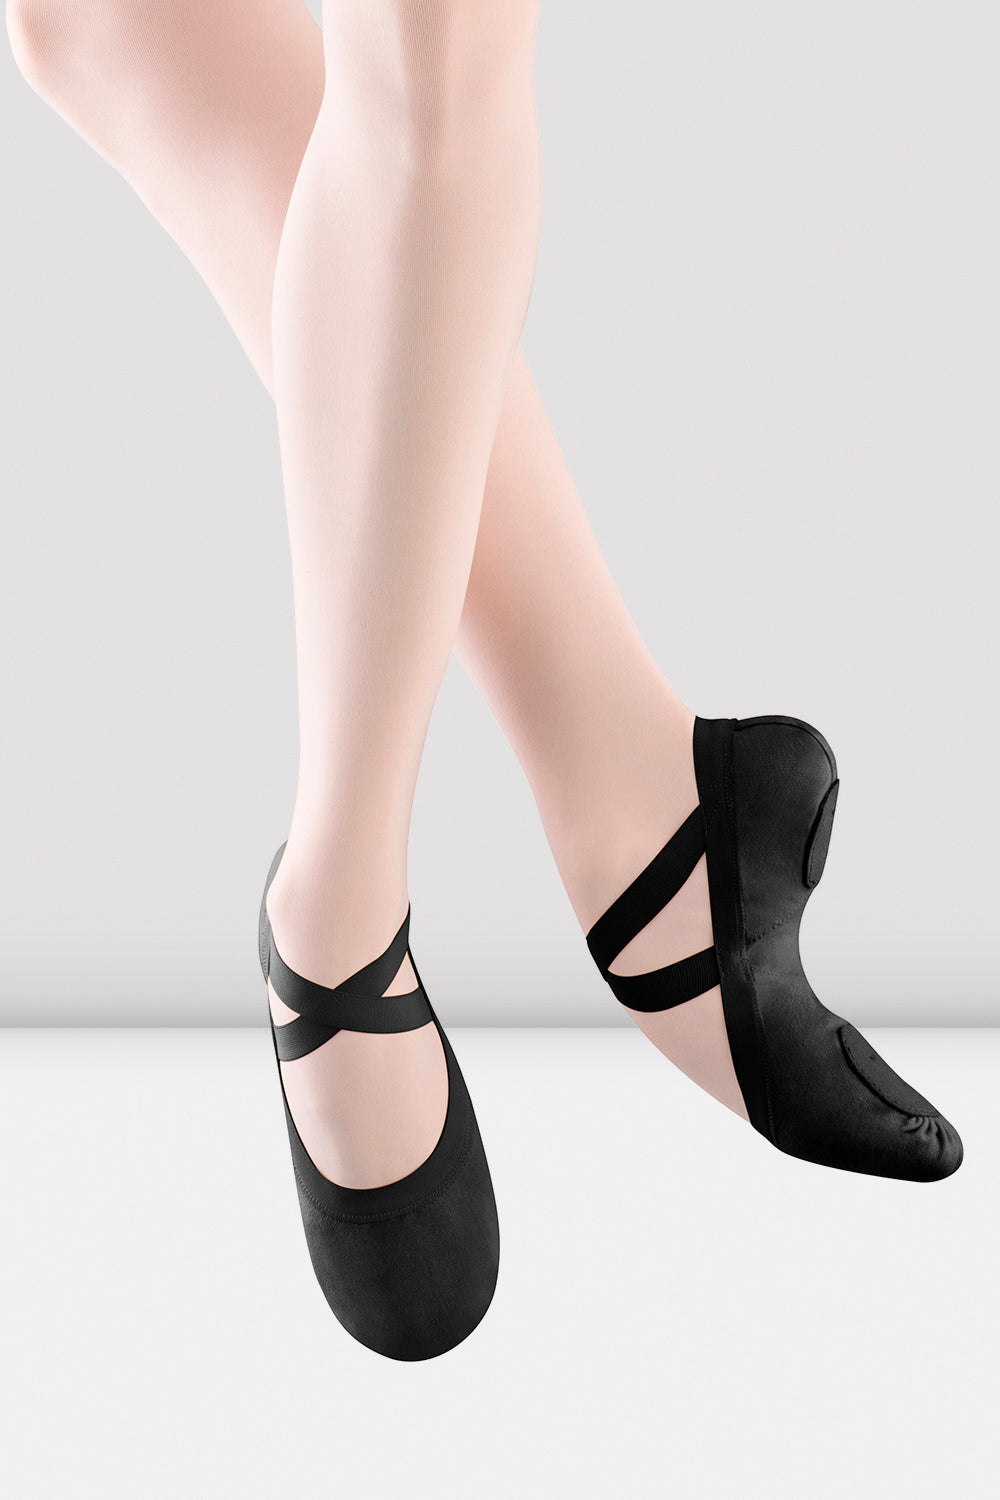 BLOCH Ladies Pro Elastic Canvas Ballet Shoes, Black Canvas